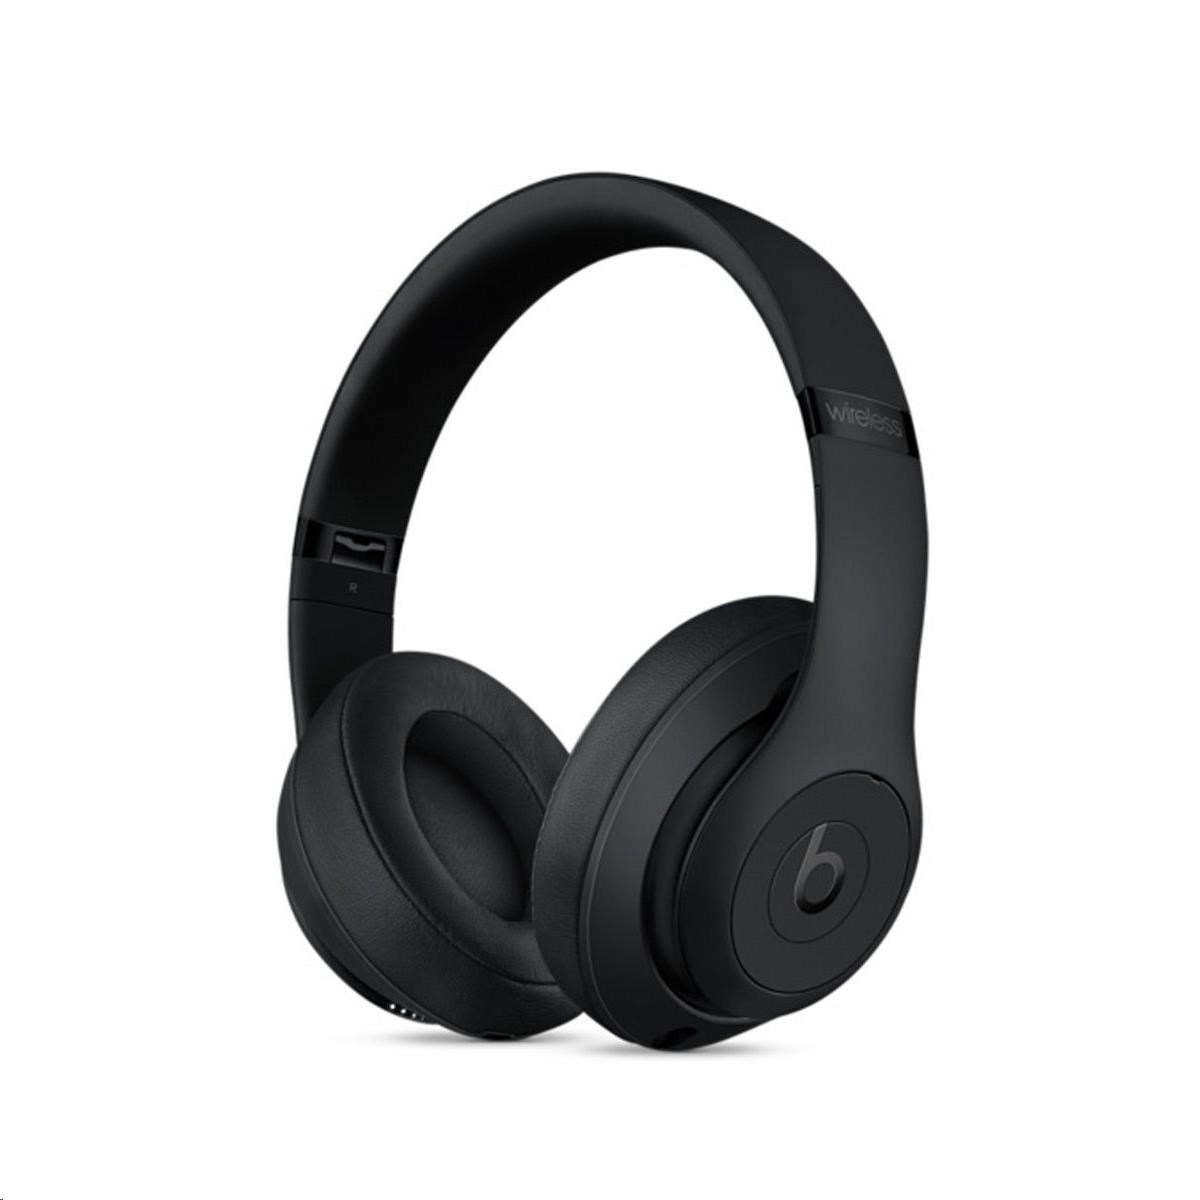 Beats Studio3 Wireless Over-Ear Headphones - Matte Black0 